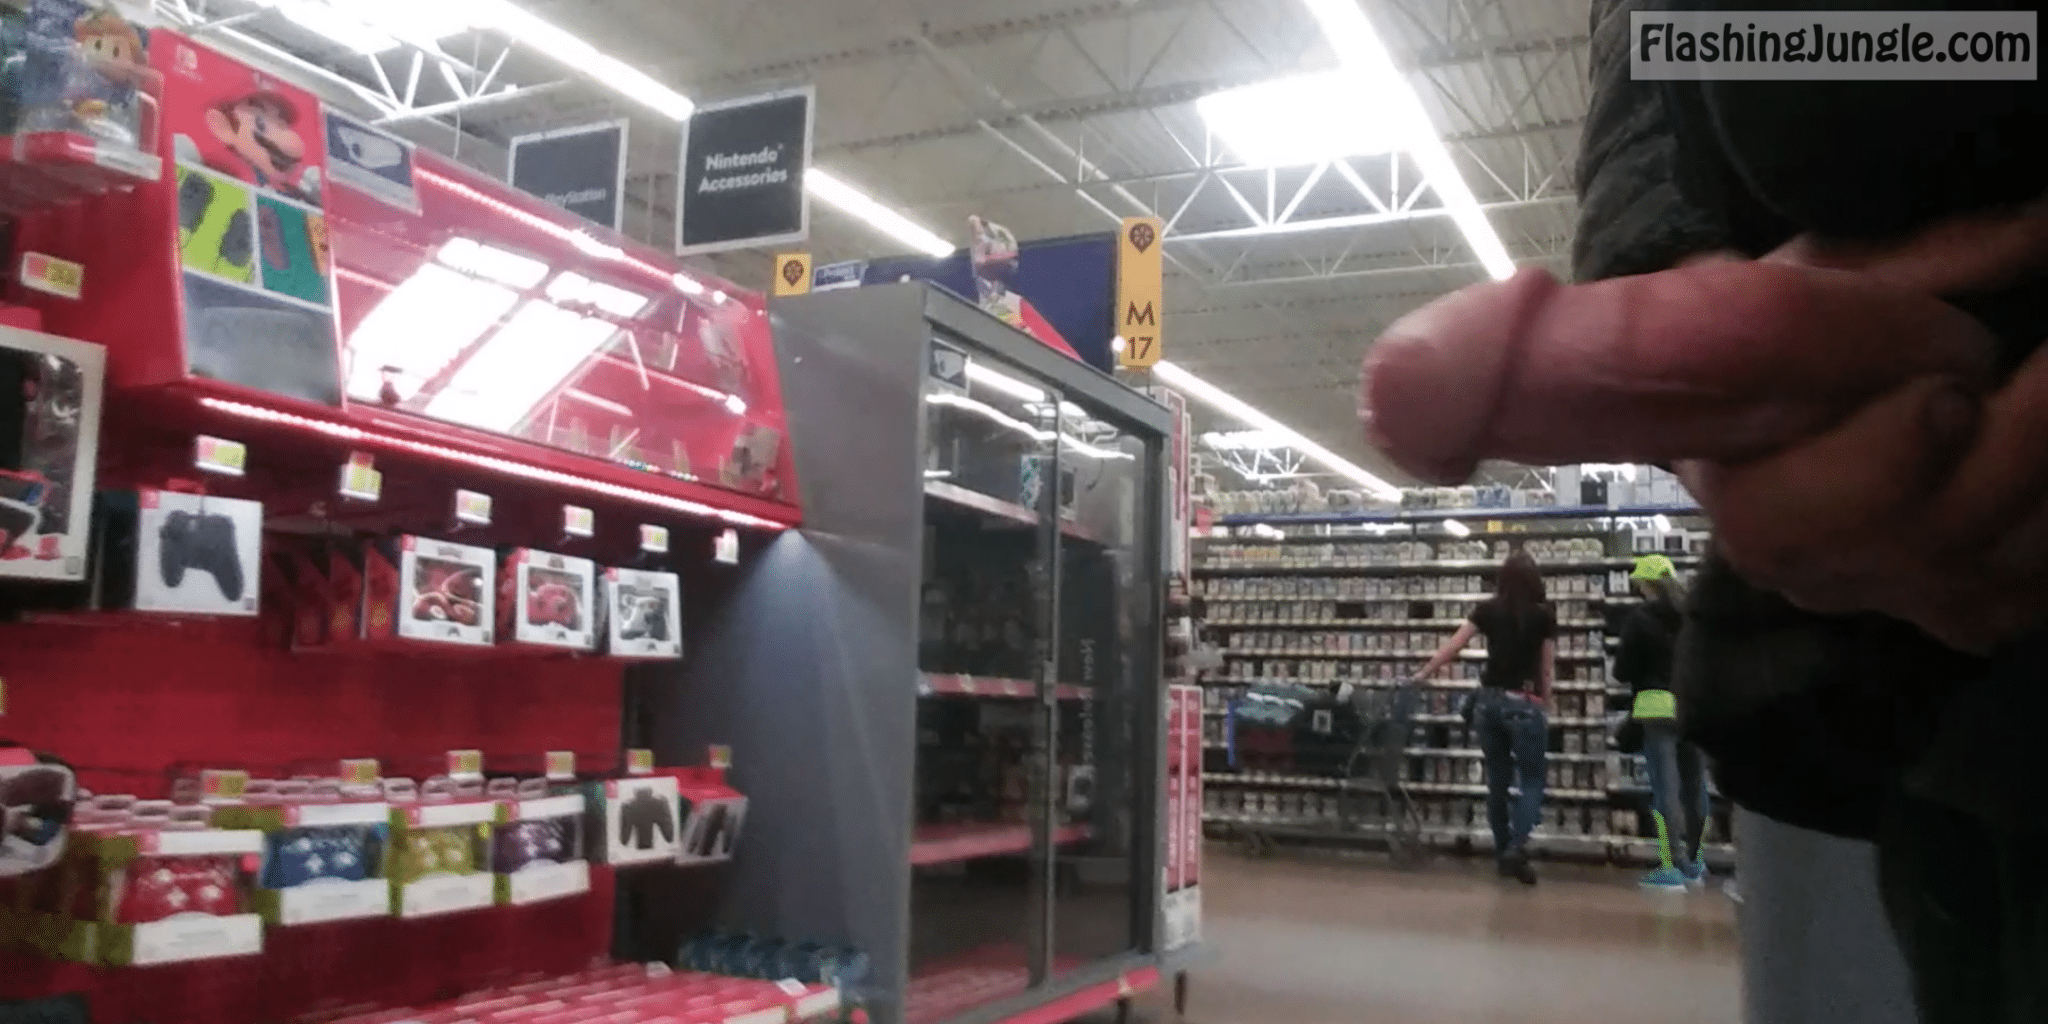 Real Amateurs Dick Flash Pics - Walmart Cockflash